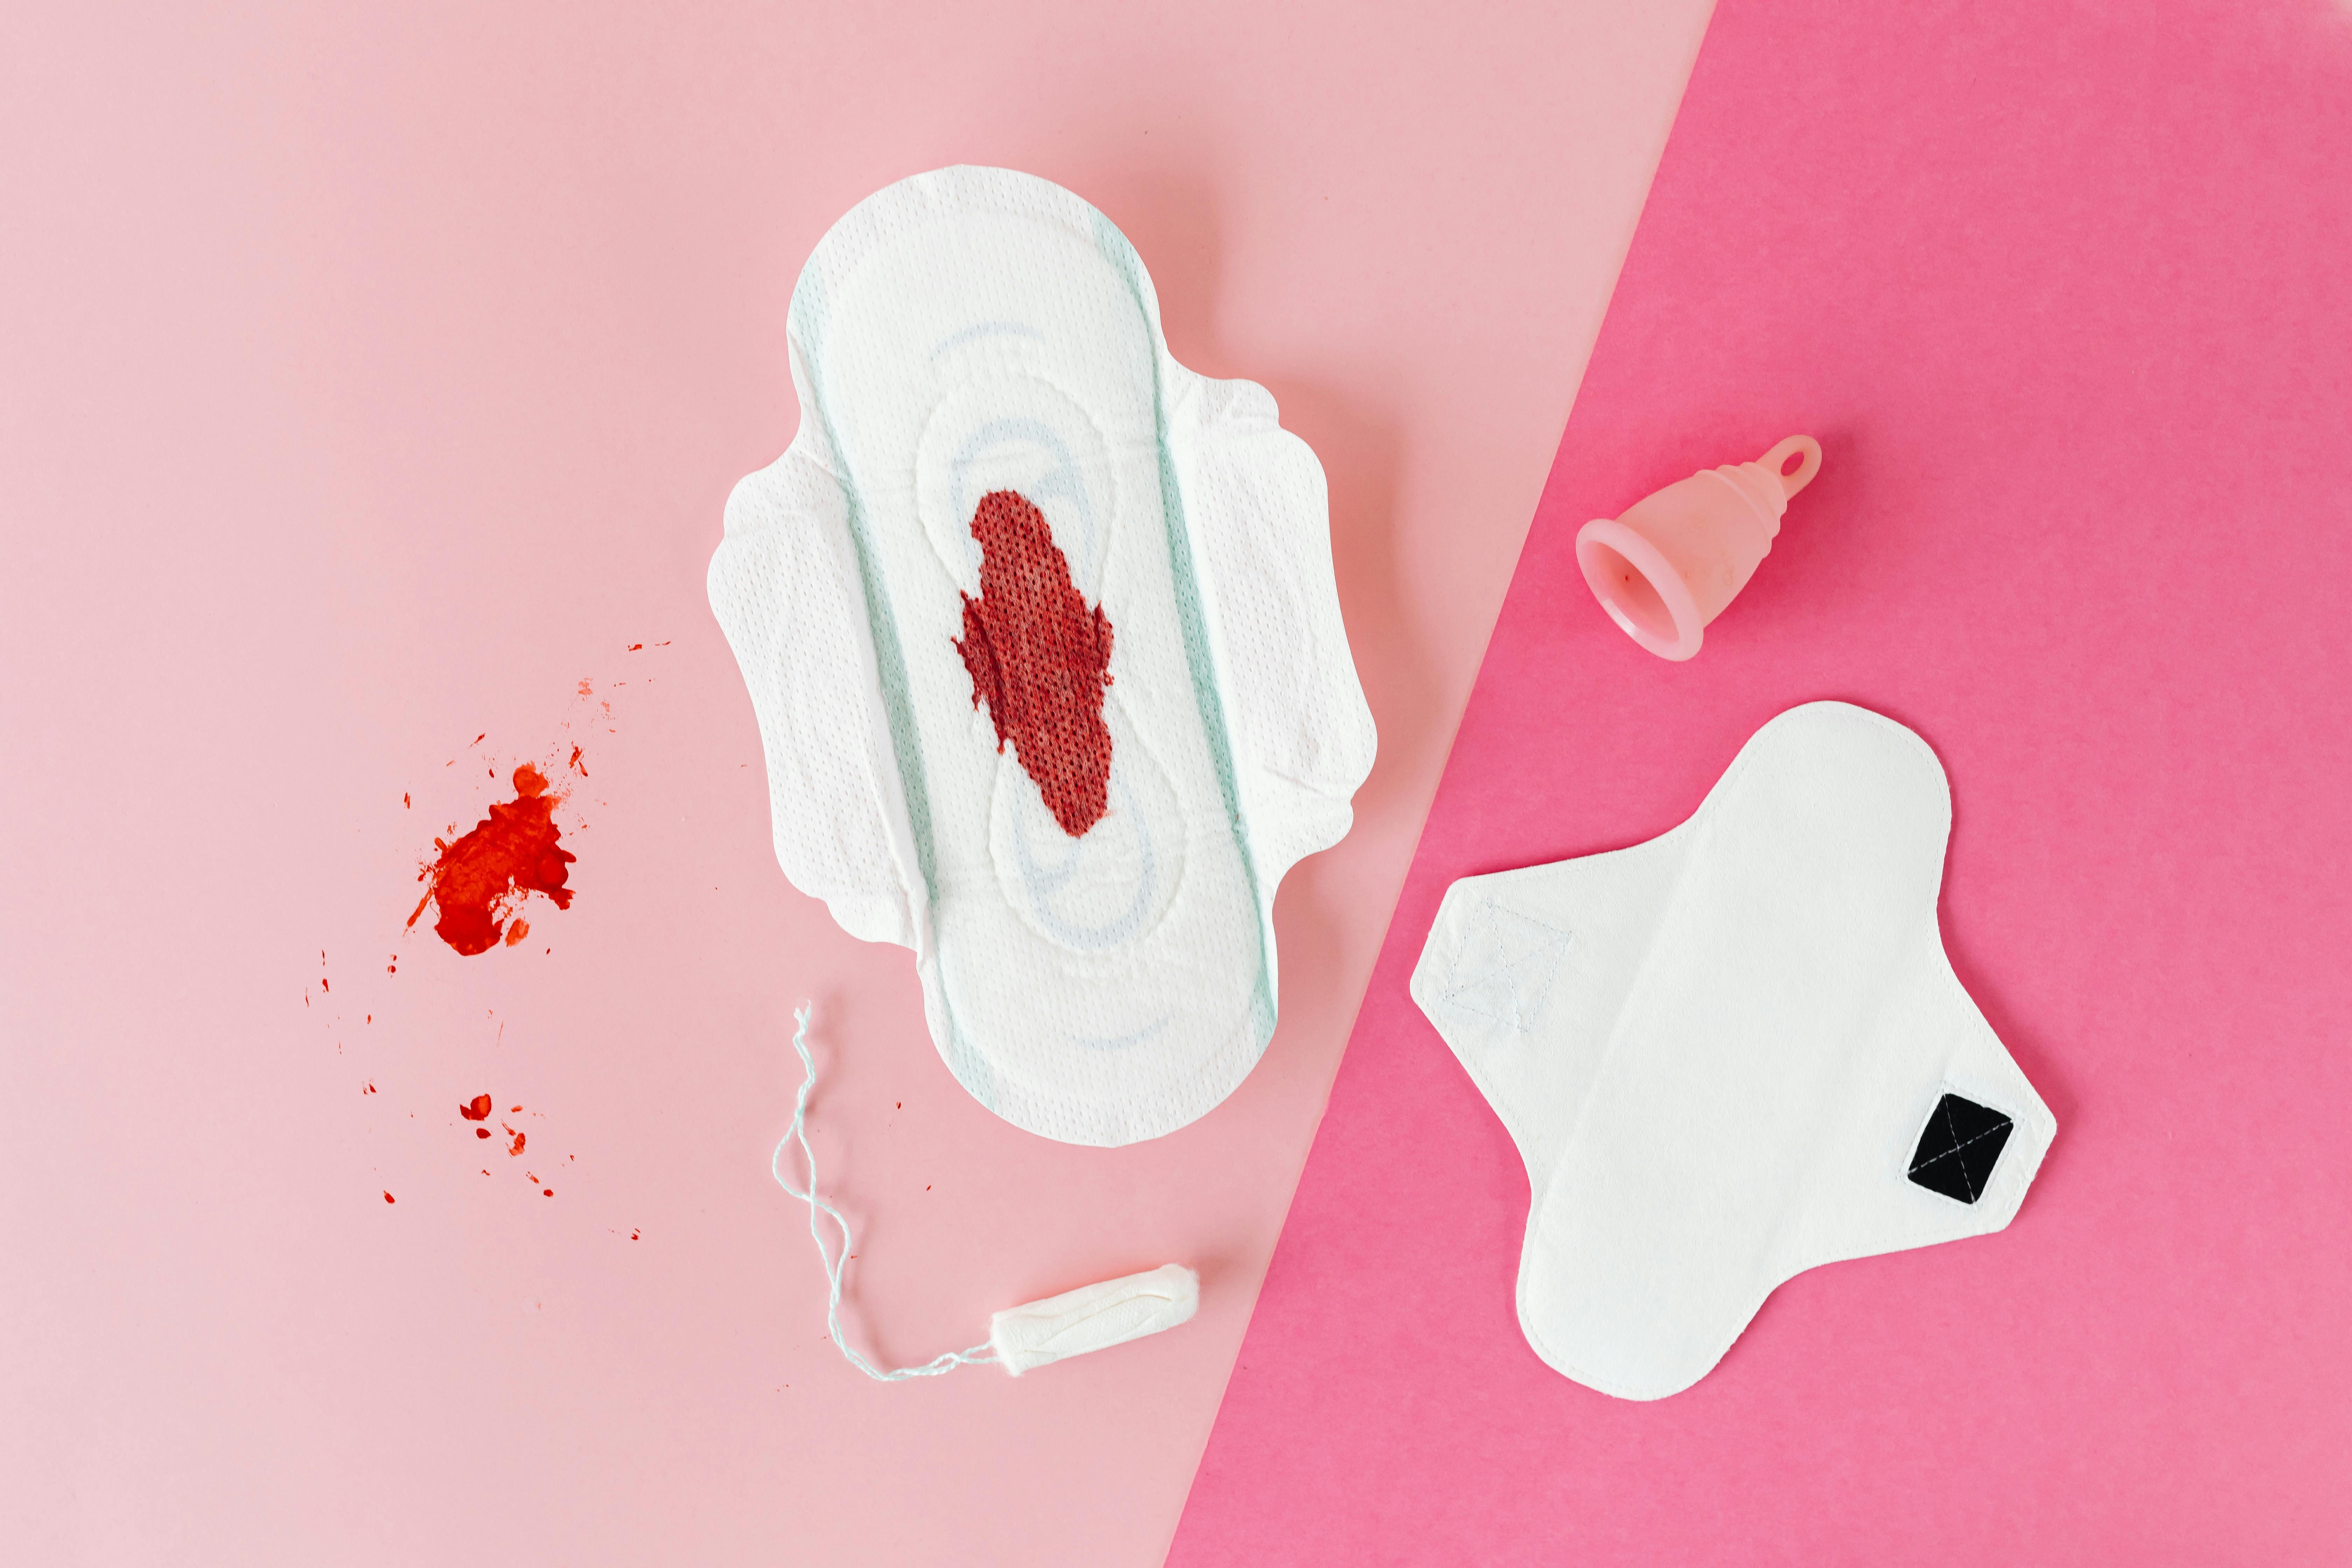 


<h3>Réduction des Déchets Jetables</h3>
<p>Les <b>culottes menstruelles</b> jouent un rôle clé dans la <i>réduction des déchets jetables</i> associés aux menstruations. Chaque année, des milliards de tampons et de serviettes hygiéniques sont utilisés et jetés, créant ainsi une quantité considérable de déchets non biodégradables. En revanche, les <b>culottes menstruelles</b> sont conçues pour être réutilisables pendant des années. En optant pour ces sous-vêtements innovants, vous contribuez à réduire significativement la quantité de déchets menstruels que vous produisez, ce qui a un impact positif sur l’environnement.</p>
<p>De plus, la <i>réduction des déchets jetables</i> entraîne également une diminution de la demande en matières premières pour la fabrication de tampons et de serviettes. Les <b>culottes menstruelles</b> sont fabriquées avec des matériaux de haute qualité et durables, ce qui signifie moins de ressources naturelles utilisées pour leur production. En investissant dans ces sous-vêtements réutilisables, vous participez activement à la préservation de notre planète tout en bénéficiant d’une solution plus respectueuse de l’environnement pour la gestion de vos règles.</p>
<h3>Impact Positif sur l’Environnement</h3>
<p>L’<i>impact positif sur l’environnement</i> des <b>culottes menstruelles</b> s’étend bien au-delà de la réduction des déchets. Ces sous-vêtements sont conçus avec une approche écoresponsable, en utilisant des matériaux respectueux de l’environnement et en minimisant leur empreinte carbone. Contrairement aux produits jetables qui nécessitent une production continue et une élimination coûteuse, les <b>culottes menstruelles</b> sont conçues pour durer, ce qui réduit leur impact sur l’environnement tout au long de leur cycle de vie.</p>
<p>De plus, de nombreuses <b>marques</b> de <b>culottes menstruelles</b> s’engagent activement dans des initiatives de durabilité, telles que la plantation d’arbres, le recyclage des matériaux, et la réduction des émissions de carbone. En optant pour ces marques, vous participez directement à ces efforts environnementaux. En somme, choisir les <b>culottes menstruelles</b> signifie faire un choix respectueux de la planète, contribuant ainsi à la protection de notre environnement pour les générations futures.</p>
<h3>Contribuez à la Protection de la Planète</h3>
<p>En utilisant des <b>culottes menstruelles</b>, vous pouvez <i>contribuer à la protection de la planète</i> de manière significative. Chaque fois que vous évitez d’utiliser un tampon ou une serviette jetable, vous réduisez votre empreinte environnementale. Cette action individuelle, lorsque multipliée par des millions de femmes qui font le même choix, a un impact collectif puissant sur la réduction des déchets et la préservation des ressources naturelles.</p>
<ul>
<li><b>Économisez de l’eau :</b> La fabrication de tampons et de serviettes hygiéniques nécessite une quantité considérable d’eau. En choisissant des <b>culottes menstruelles</b>, vous contribuez à la préservation de cette ressource précieuse.</li>
<li><b>Moins de pollution :</b> La production et l’élimination de produits menstruels jetables génèrent des émissions polluantes. En optant pour des sous-vêtements réutilisables, vous réduisez cette pollution.</li>
<li><b>Préservez la biodiversité :</b> La réduction des déchets plastiques contribue à la préservation de la faune et de la flore. Votre choix de <b>culottes menstruelles</b> a un impact positif sur l’écosystème.</li>
</ul>
<p>En somme, les <b>culottes menstruelles</b> offrent bien plus que la commodité ; elles représentent une façon tangible de <i>contribuer à la protection de la planète</i> en adoptant une approche plus durable et respectueuse de l’environnement pour la gestion de vos règles.</p>
<p> » /><br />
Les <b>culottes menstruelles</b> ne se contentent pas d’offrir une solution <i><a href=